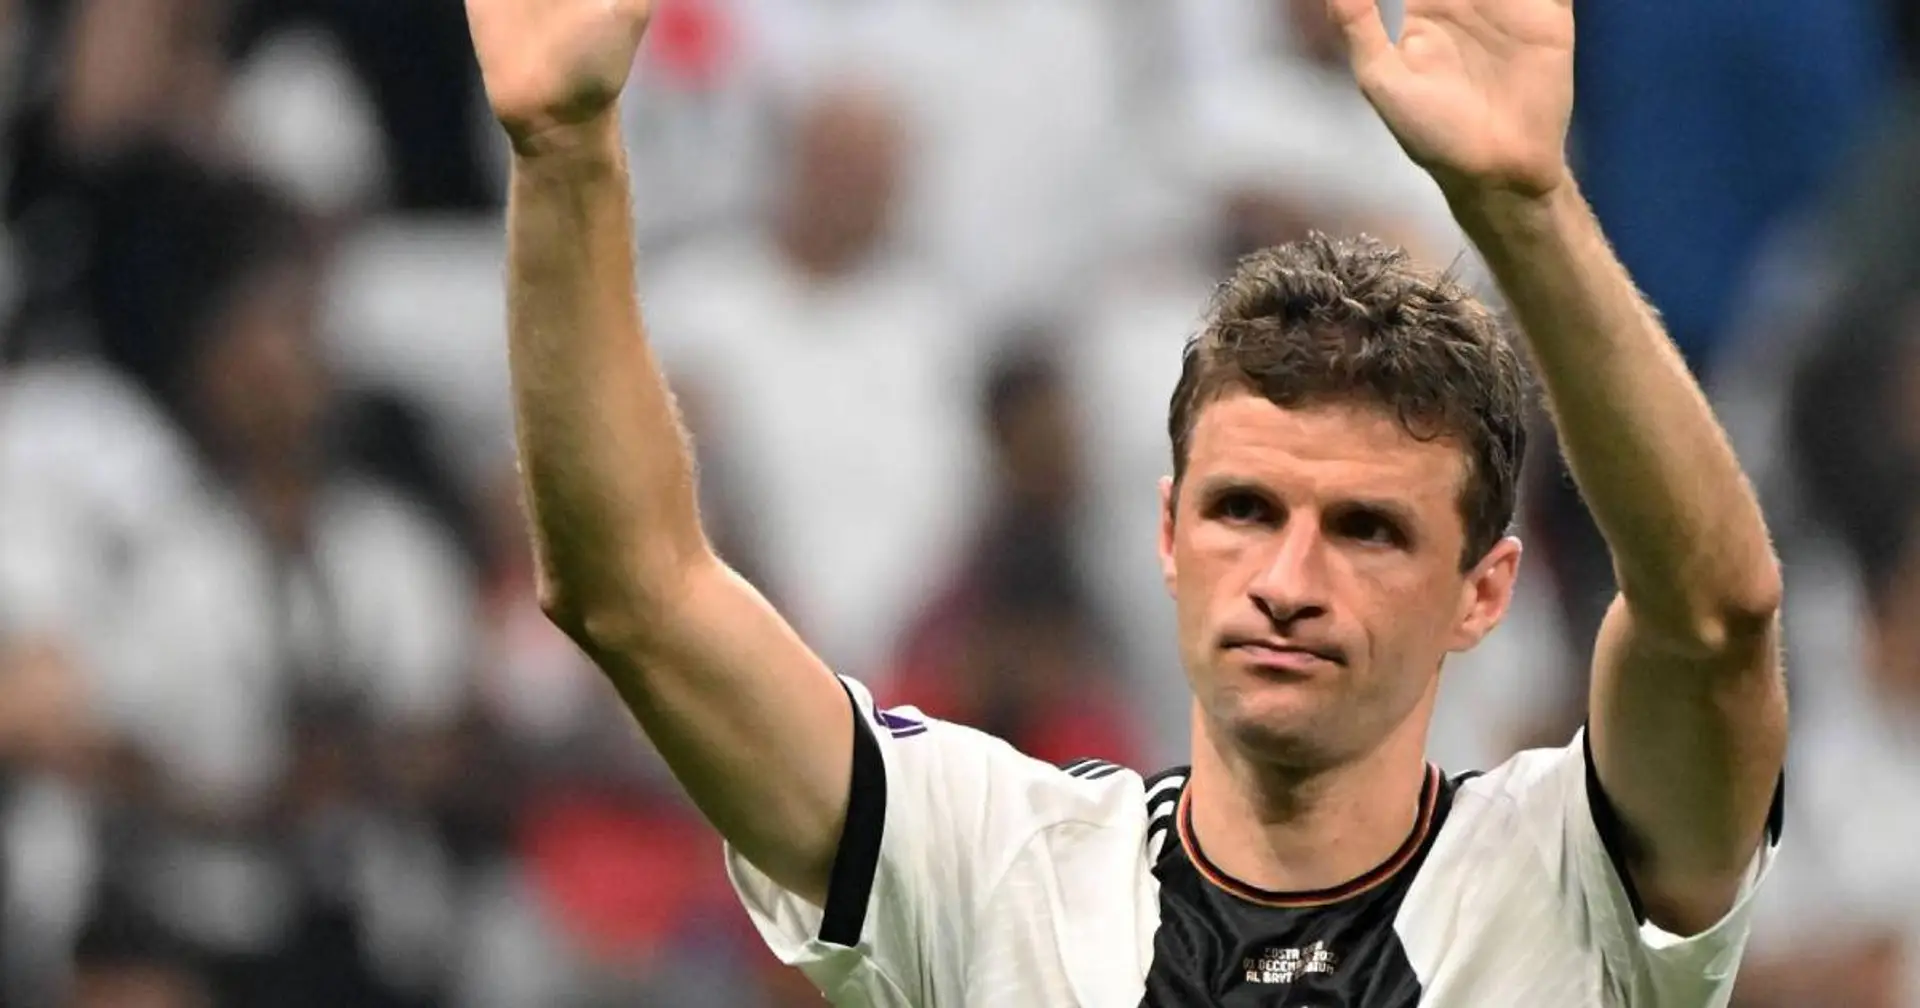 "Wir woll'n den Müller seh'n": So beliebt ist Thomas unter den Fans der deutschen Nationalmannschaft